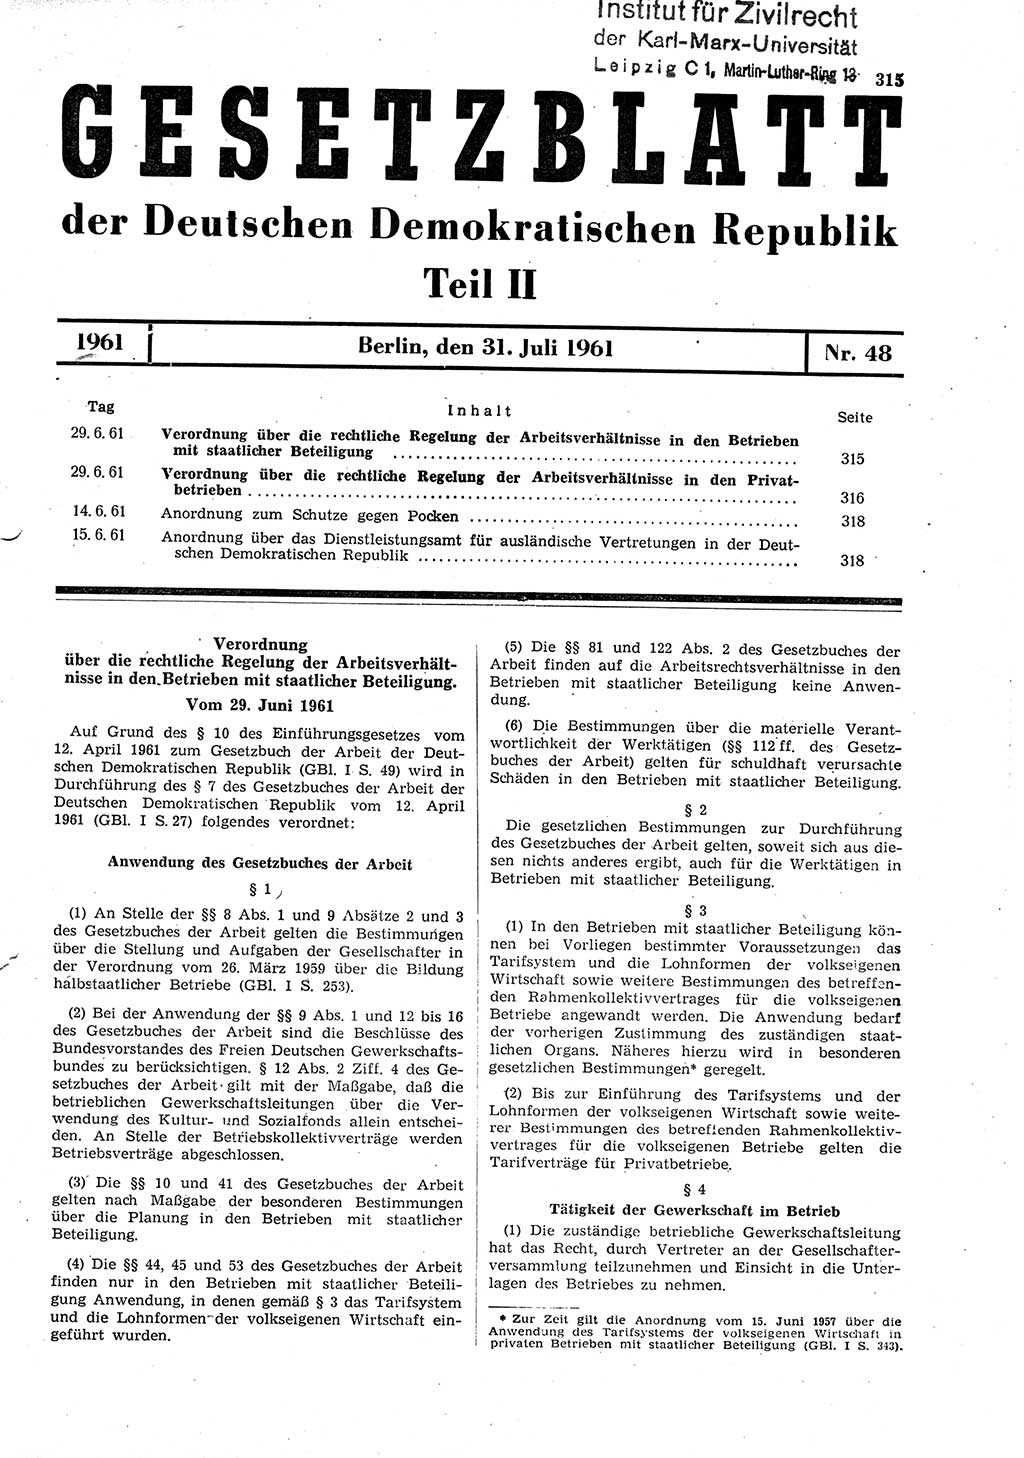 Gesetzblatt (GBl.) der Deutschen Demokratischen Republik (DDR) Teil ⅠⅠ 1961, Seite 315 (GBl. DDR ⅠⅠ 1961, S. 315)